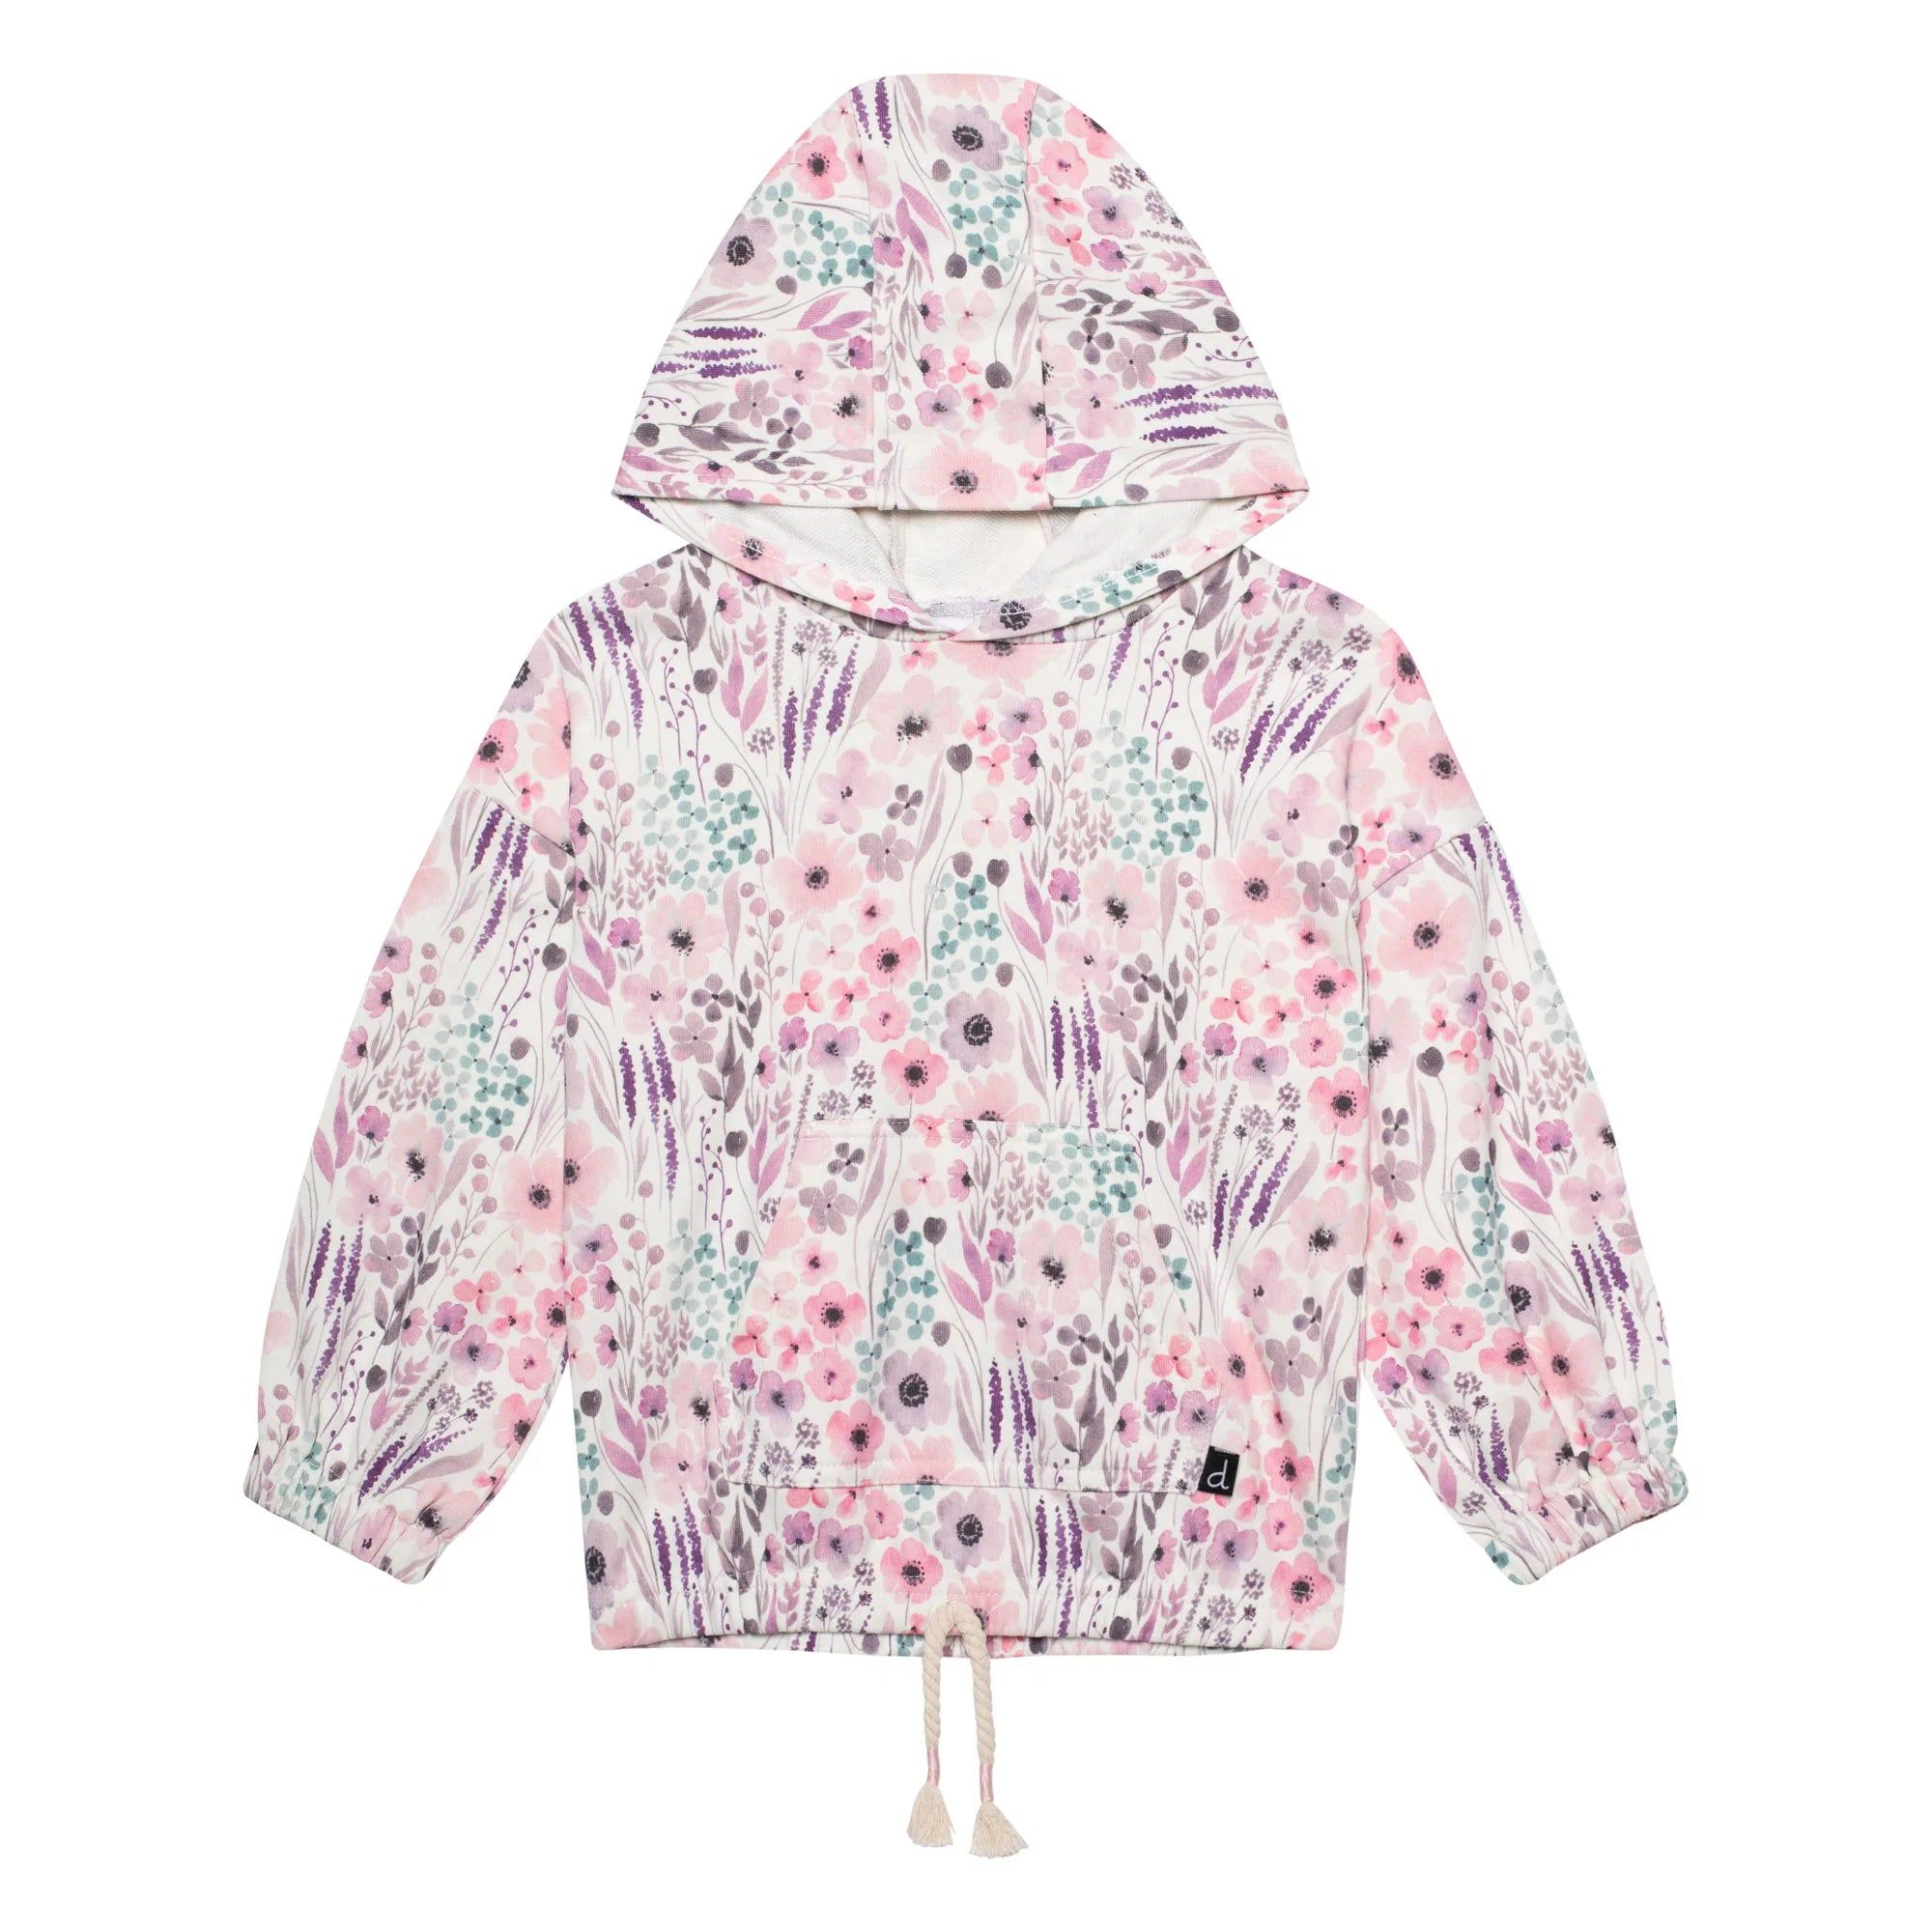 Printed Long Sleeve Hooded Sweatshirt Pink Watercolor Flowers | Deux par Deux Childrens Designer Clothing